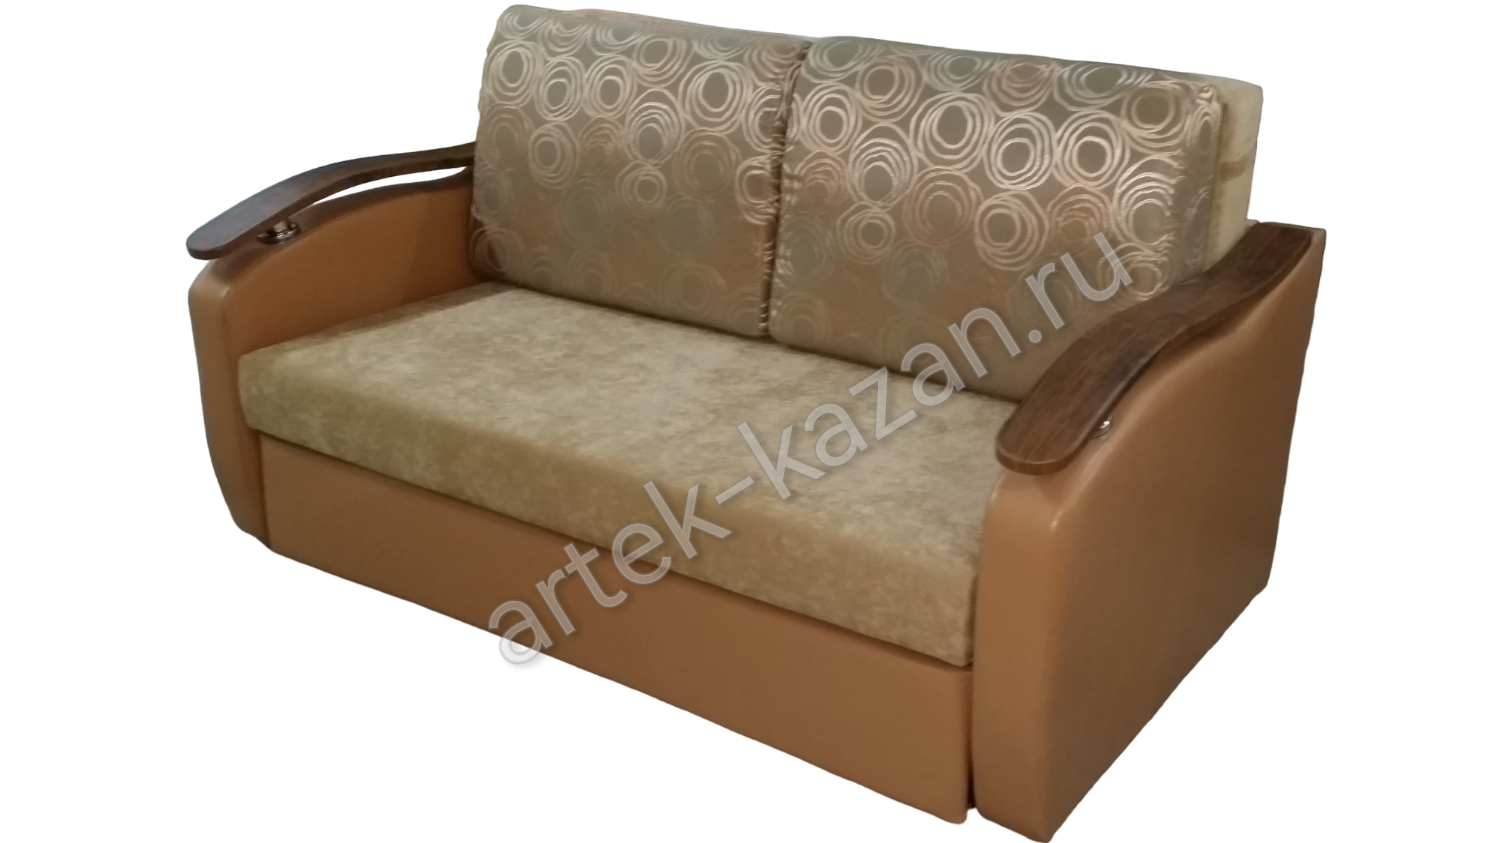 Мини диван на выкатном механизме Миник фото № 15. Купить недорогой диван по низкой цене от производителя можно у нас.